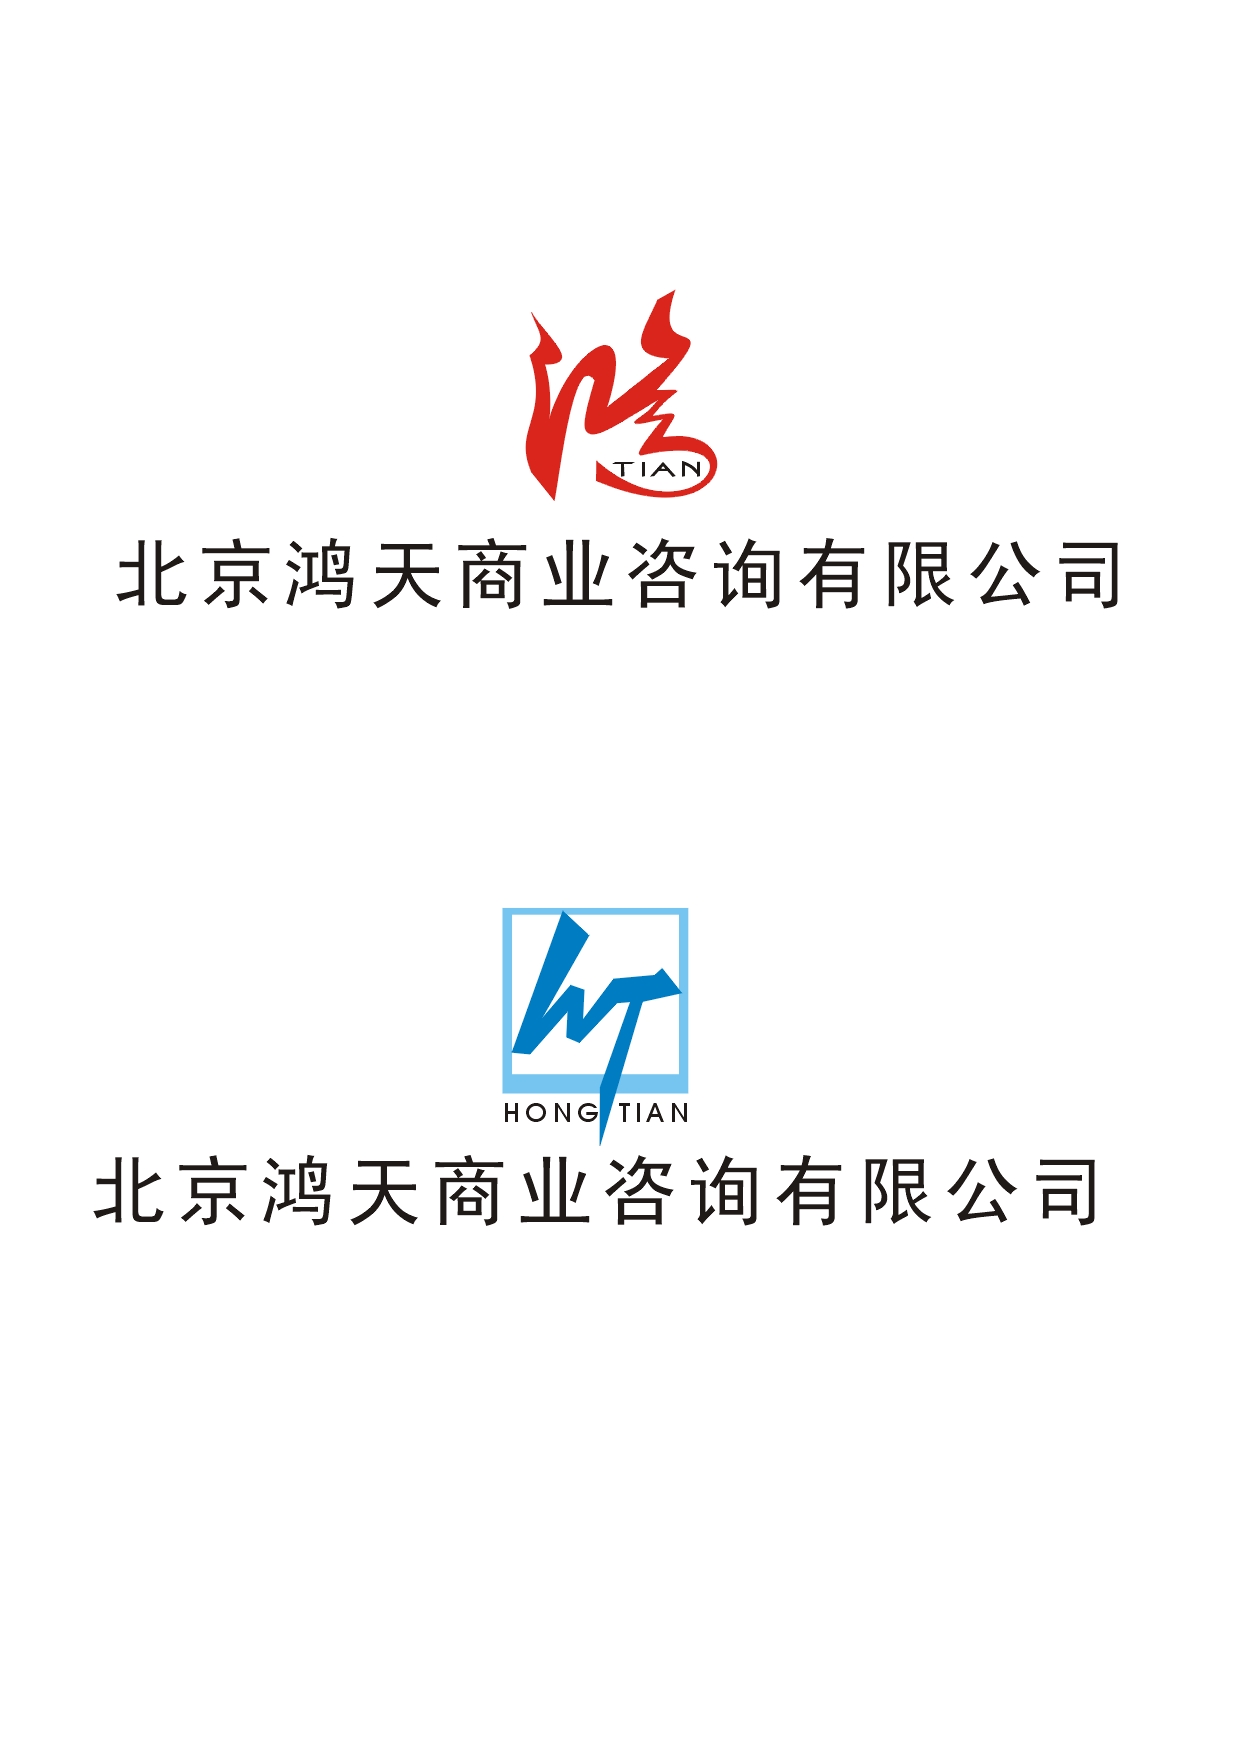 [4043号任务 500元 北京鸿天商业咨询公司logo设计 稿件#906776]